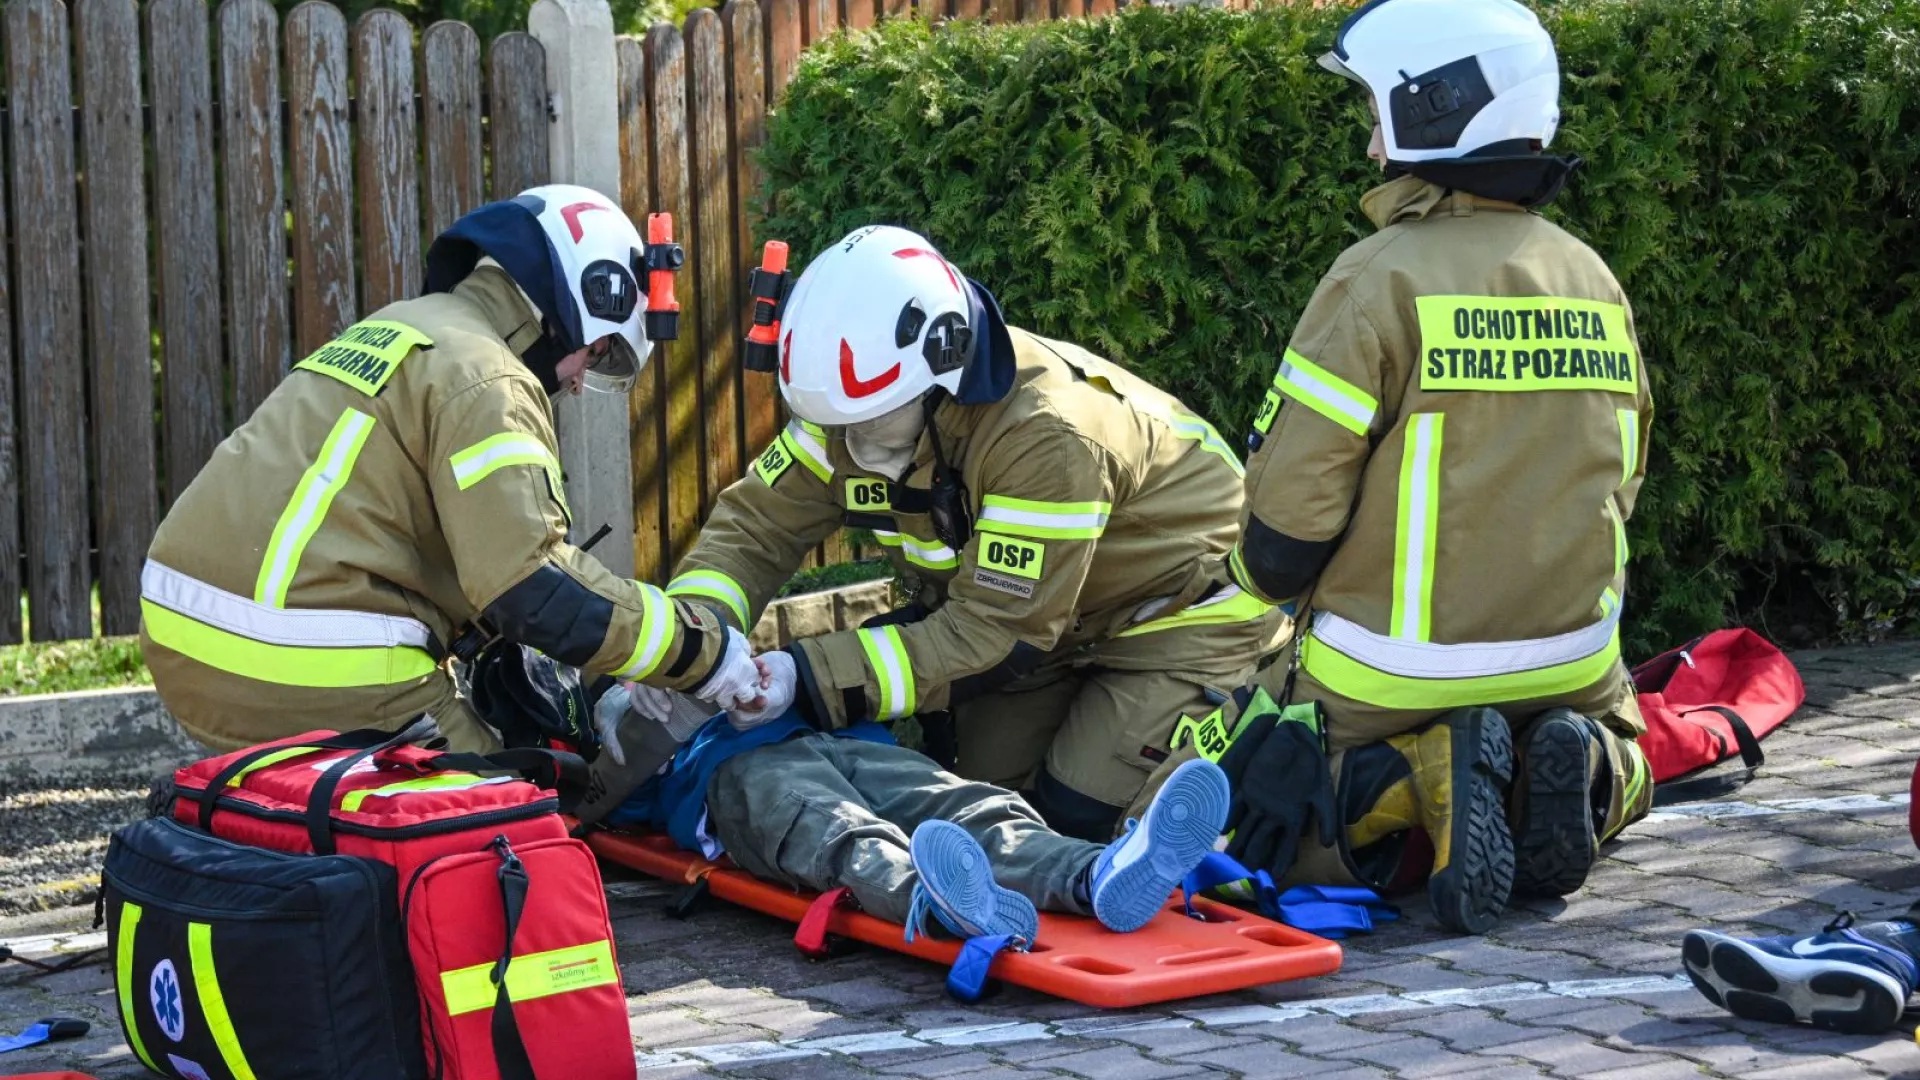 Strażacy udzielający pierwszej pomocy osobom poszkodowanym 